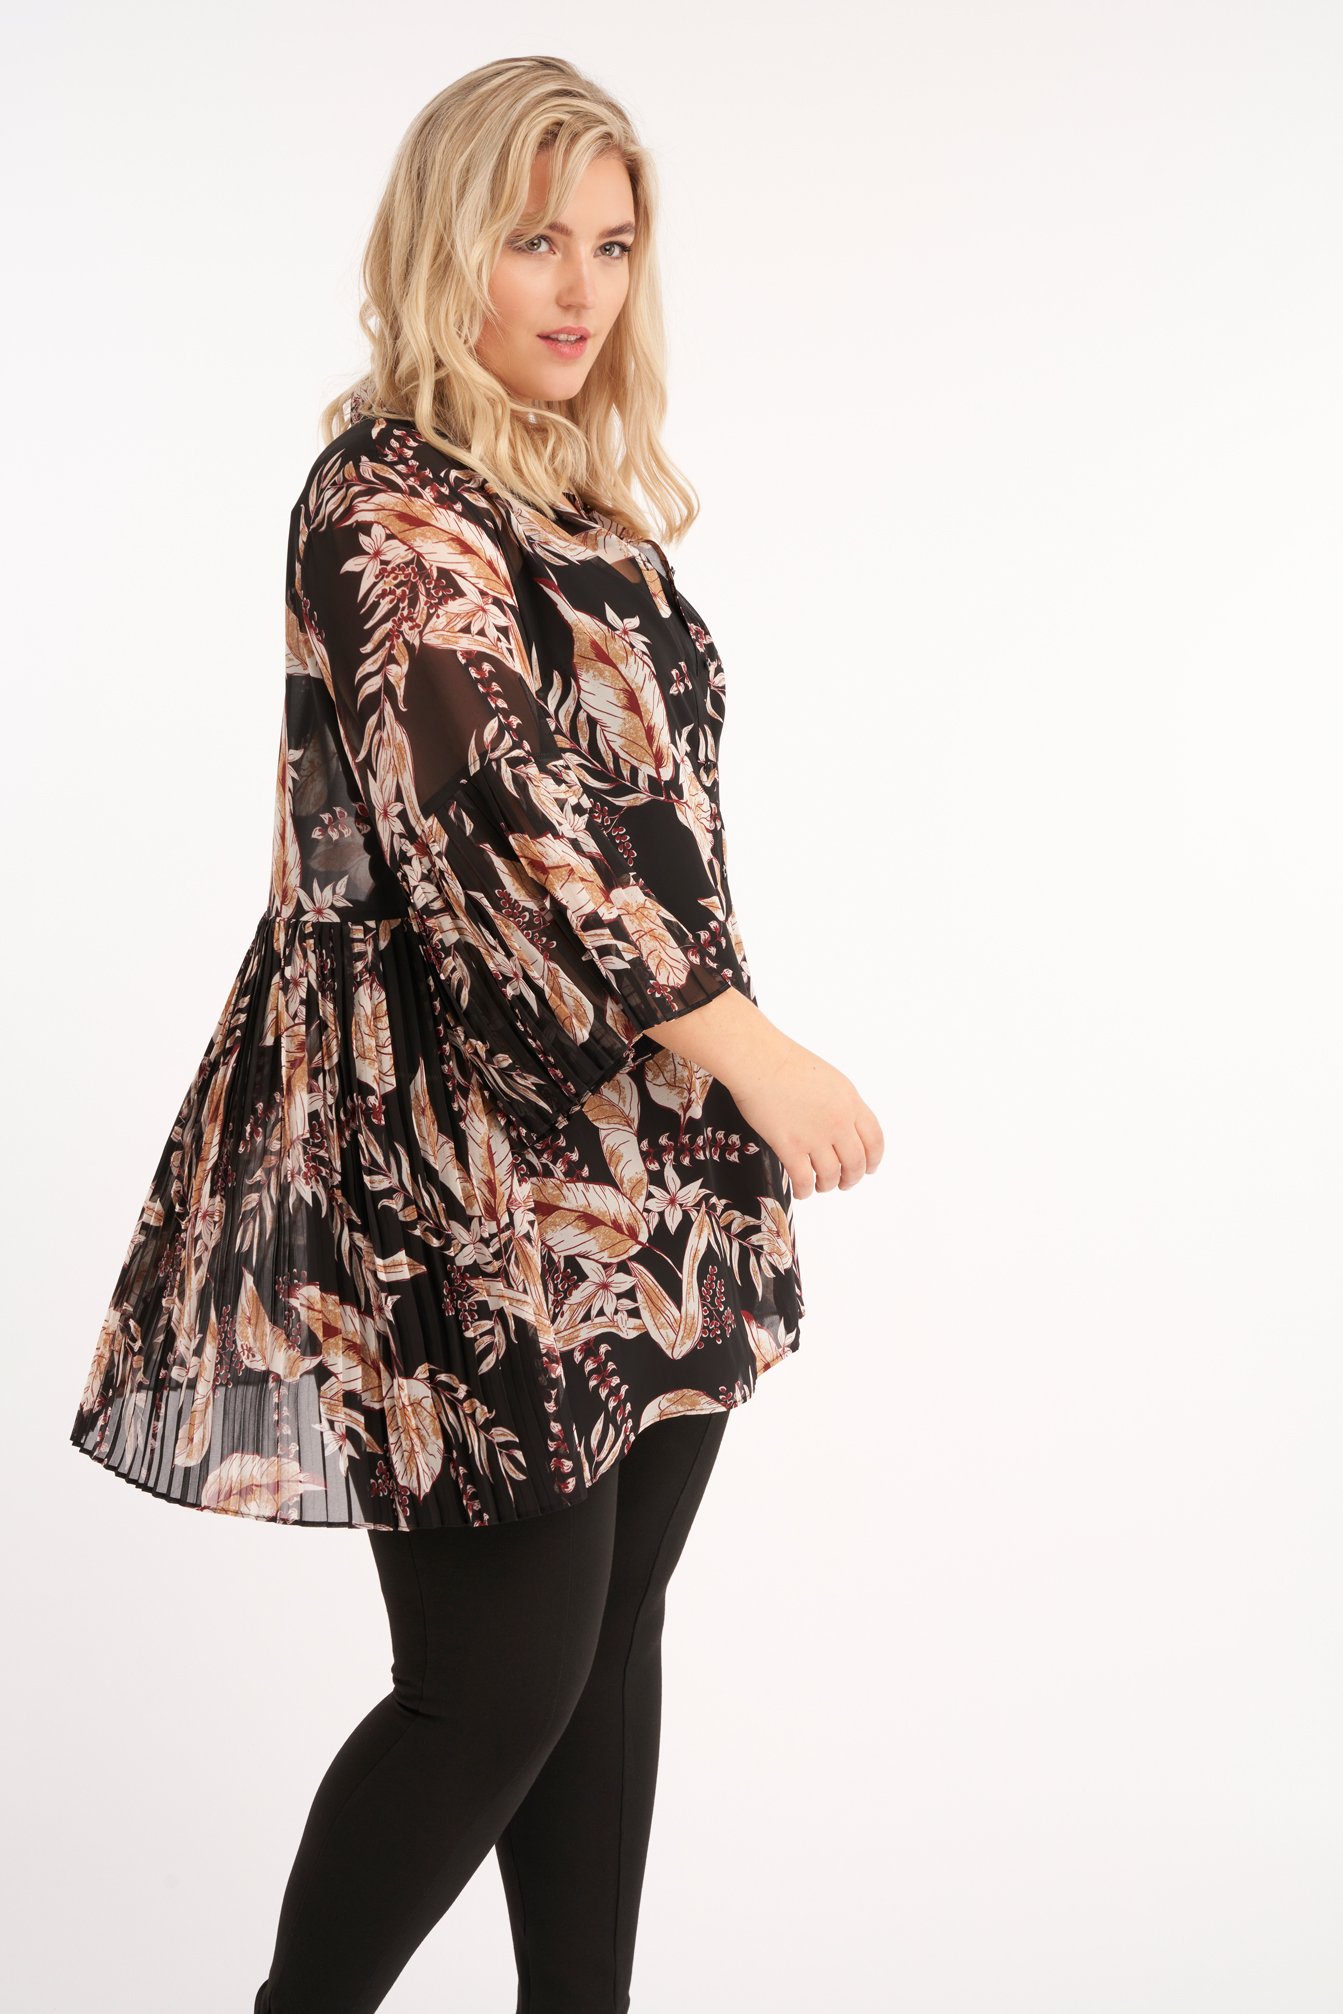 Damen Lange Bluse mit Trompetenärmeln | Official MS Mode® online store